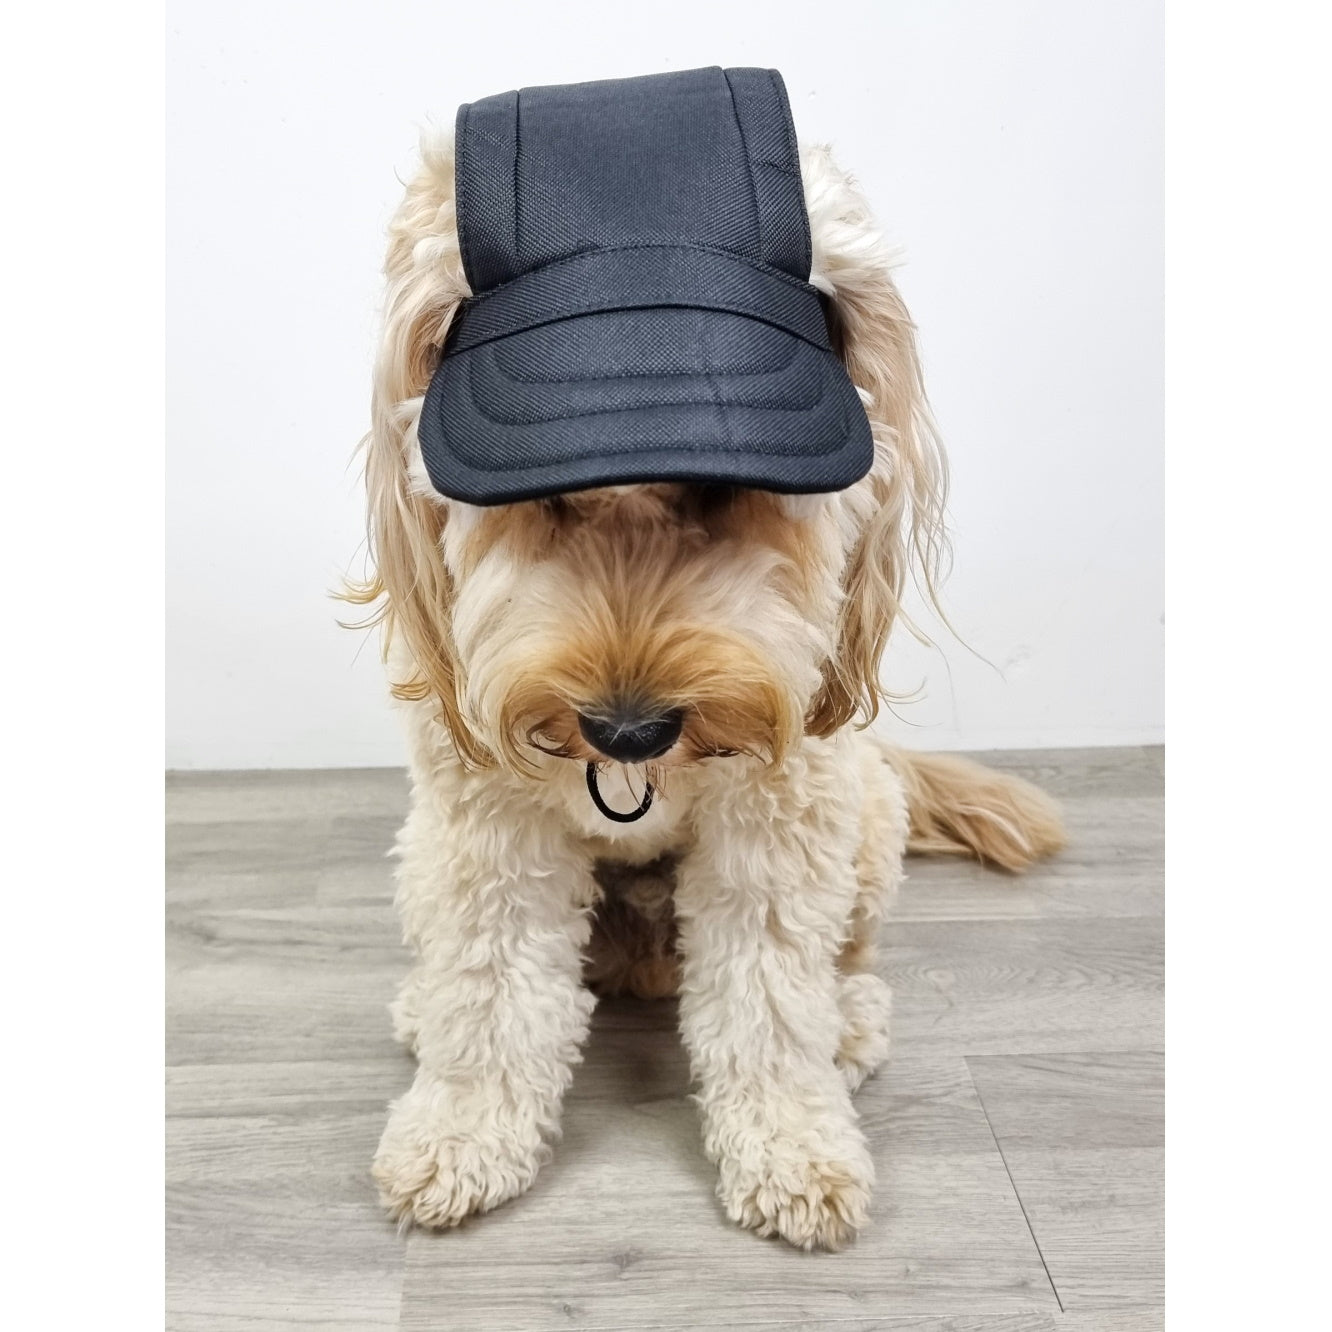 Dog Cap - Black